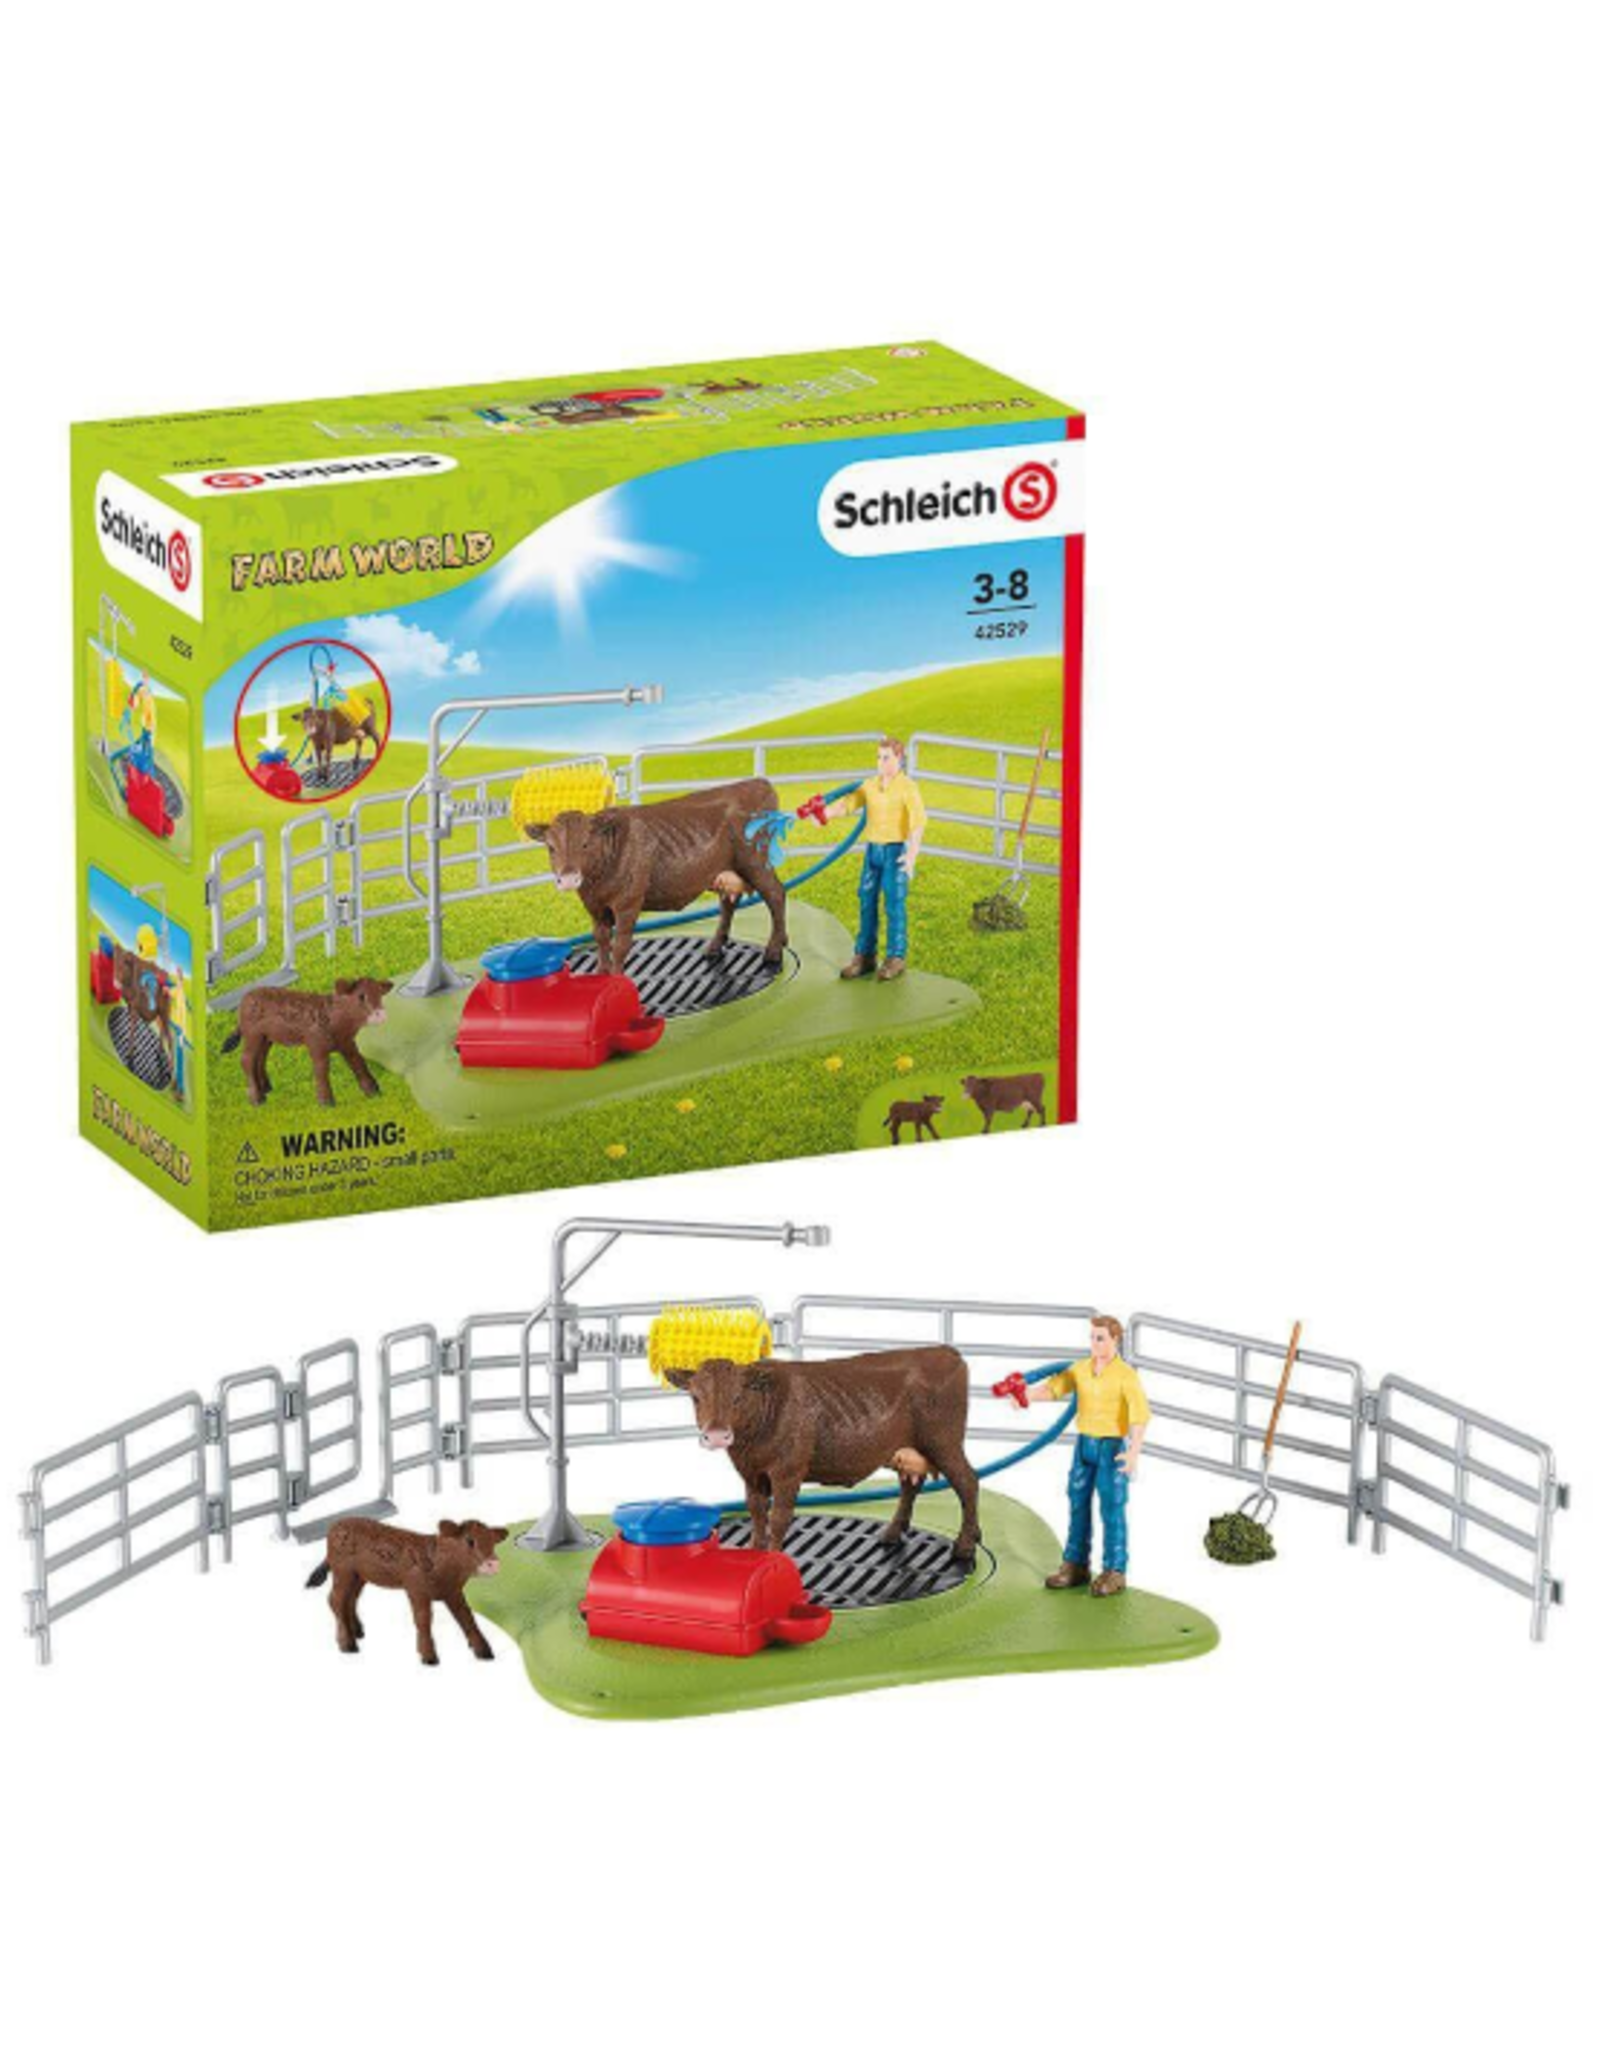 Schleich Schleich - Farm World - 42529 - Happy Cow Wash